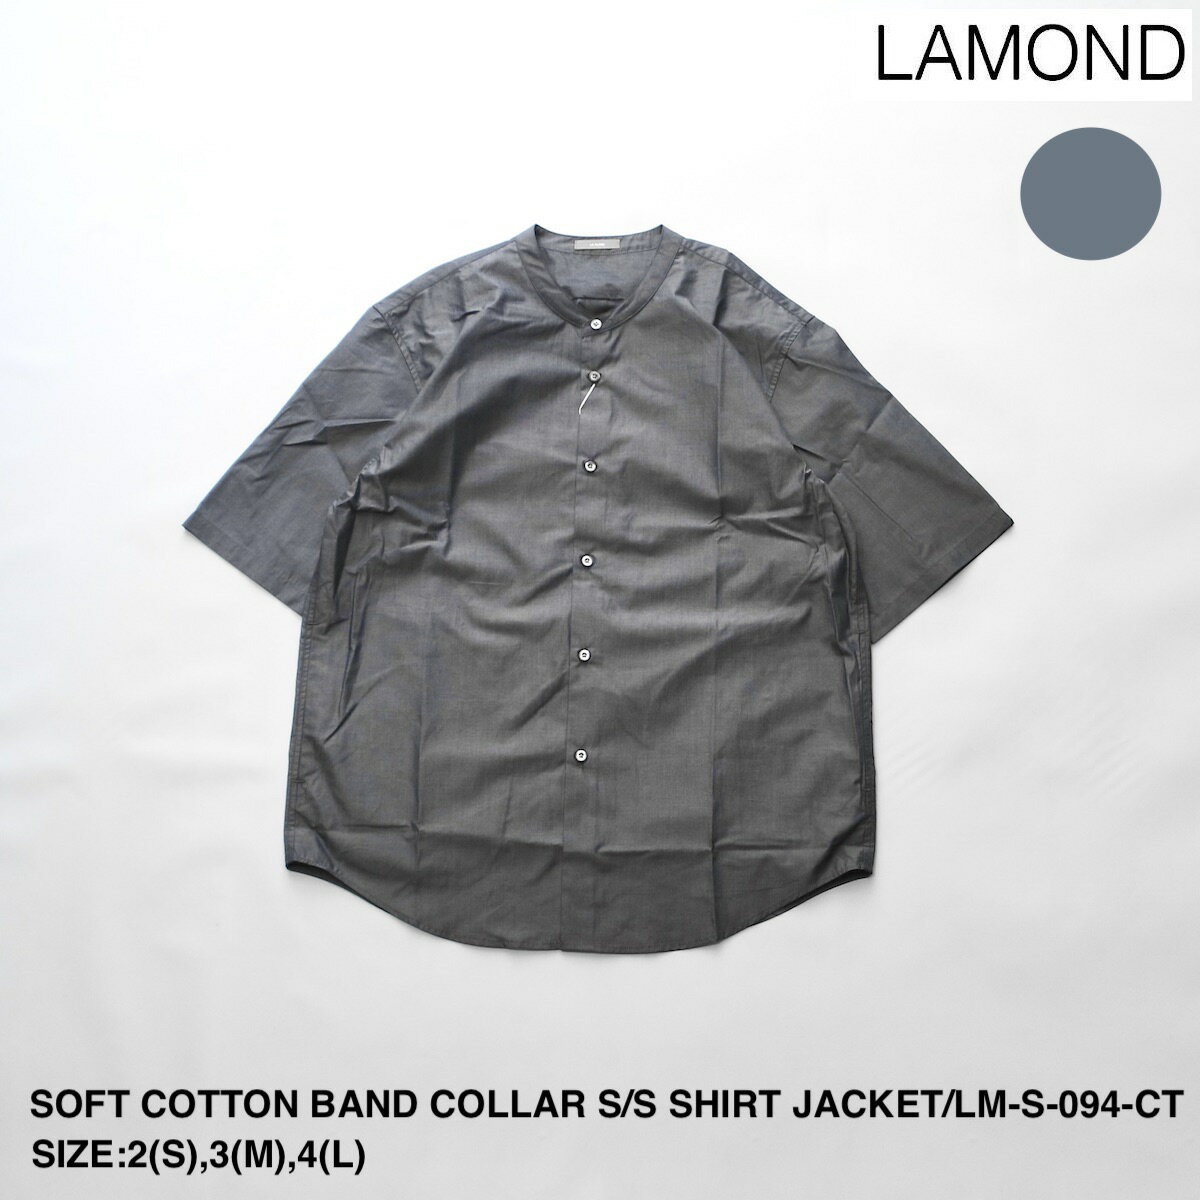 ラモンド SOFT COTTON BAND COLLAR SHORT SLEEVE SHIRT JACKET | メンズ シャツ メンズシャツ バンドカラー バンドカラーシャツ ショートスリーブ ショートスリーブシャツ シャツジャケット シンプル ブランド カジュアル 半袖 半袖シャツ 日本製